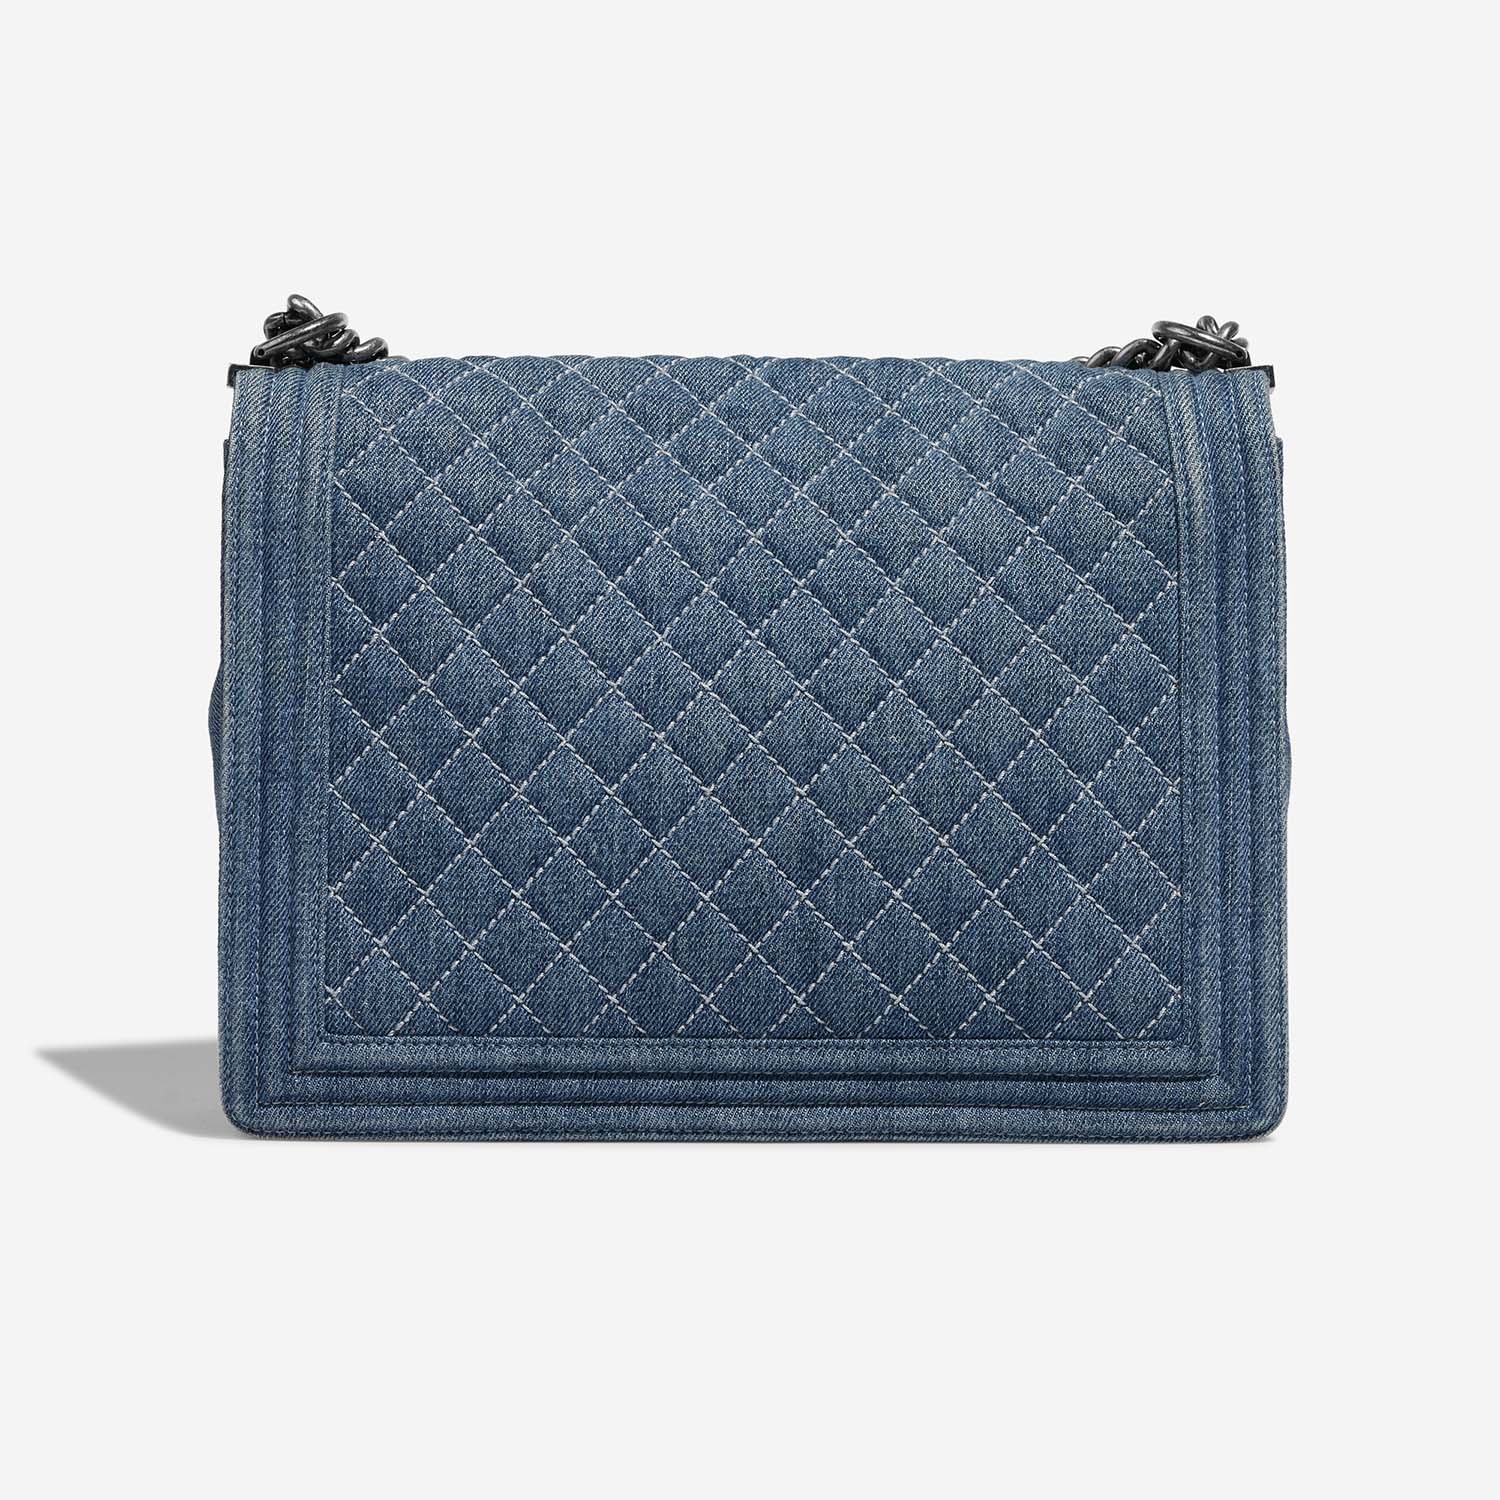 Chanel Boy Large Blue Back  | Sell your designer bag on Saclab.com